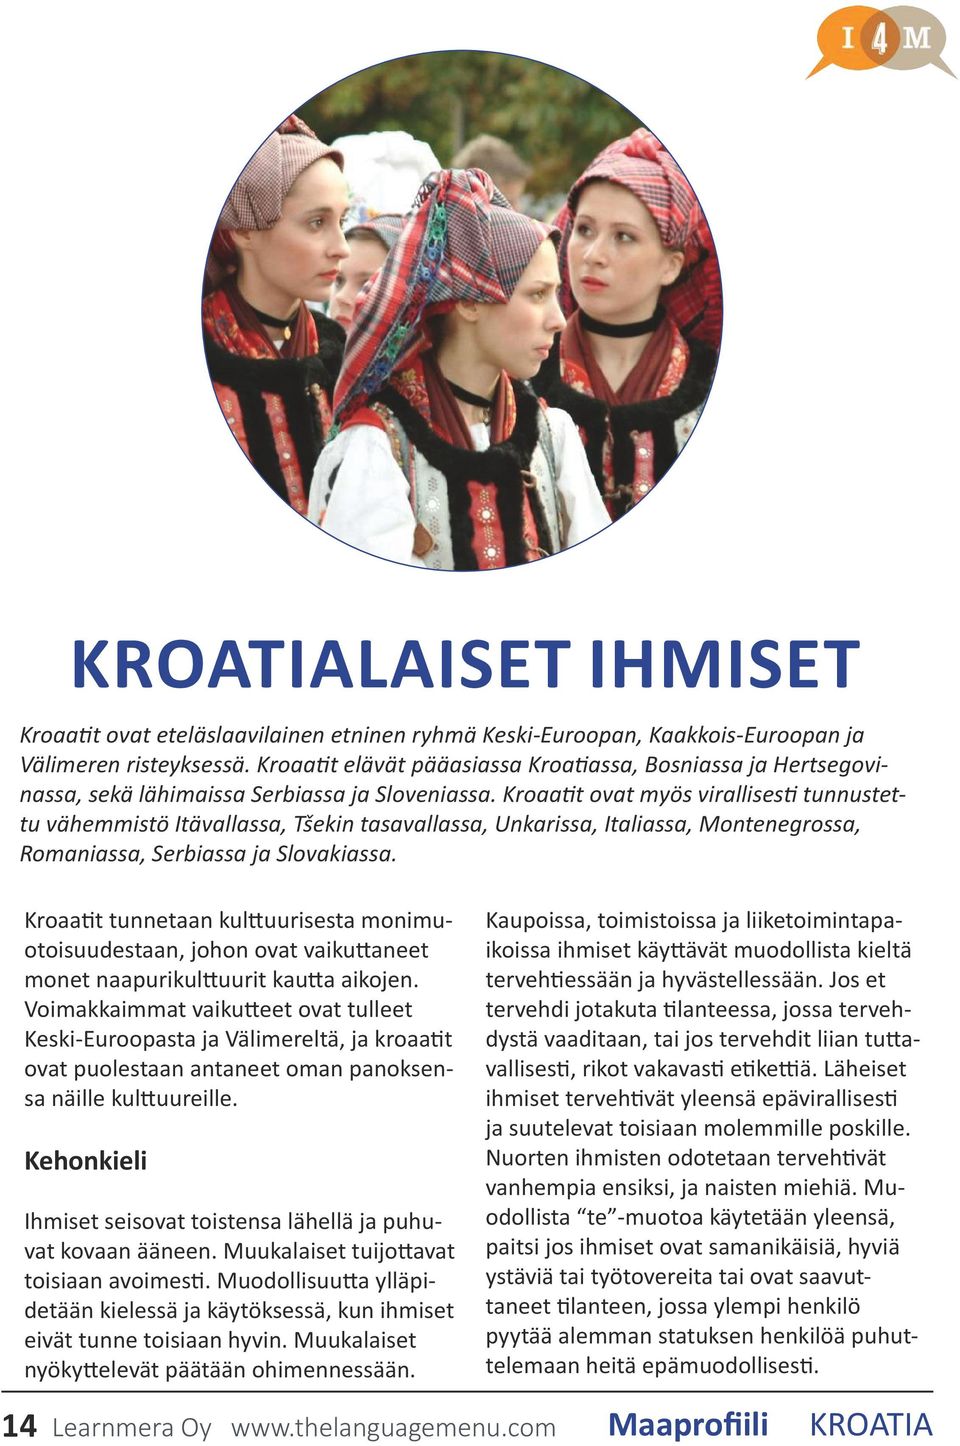 Kroaatit ovat myös virallisesti tunnustettu vähemmistö Itävallassa, Tšekin tasavallassa, Unkarissa, Italiassa, Montenegrossa, Romaniassa, Serbiassa ja Slovakiassa.